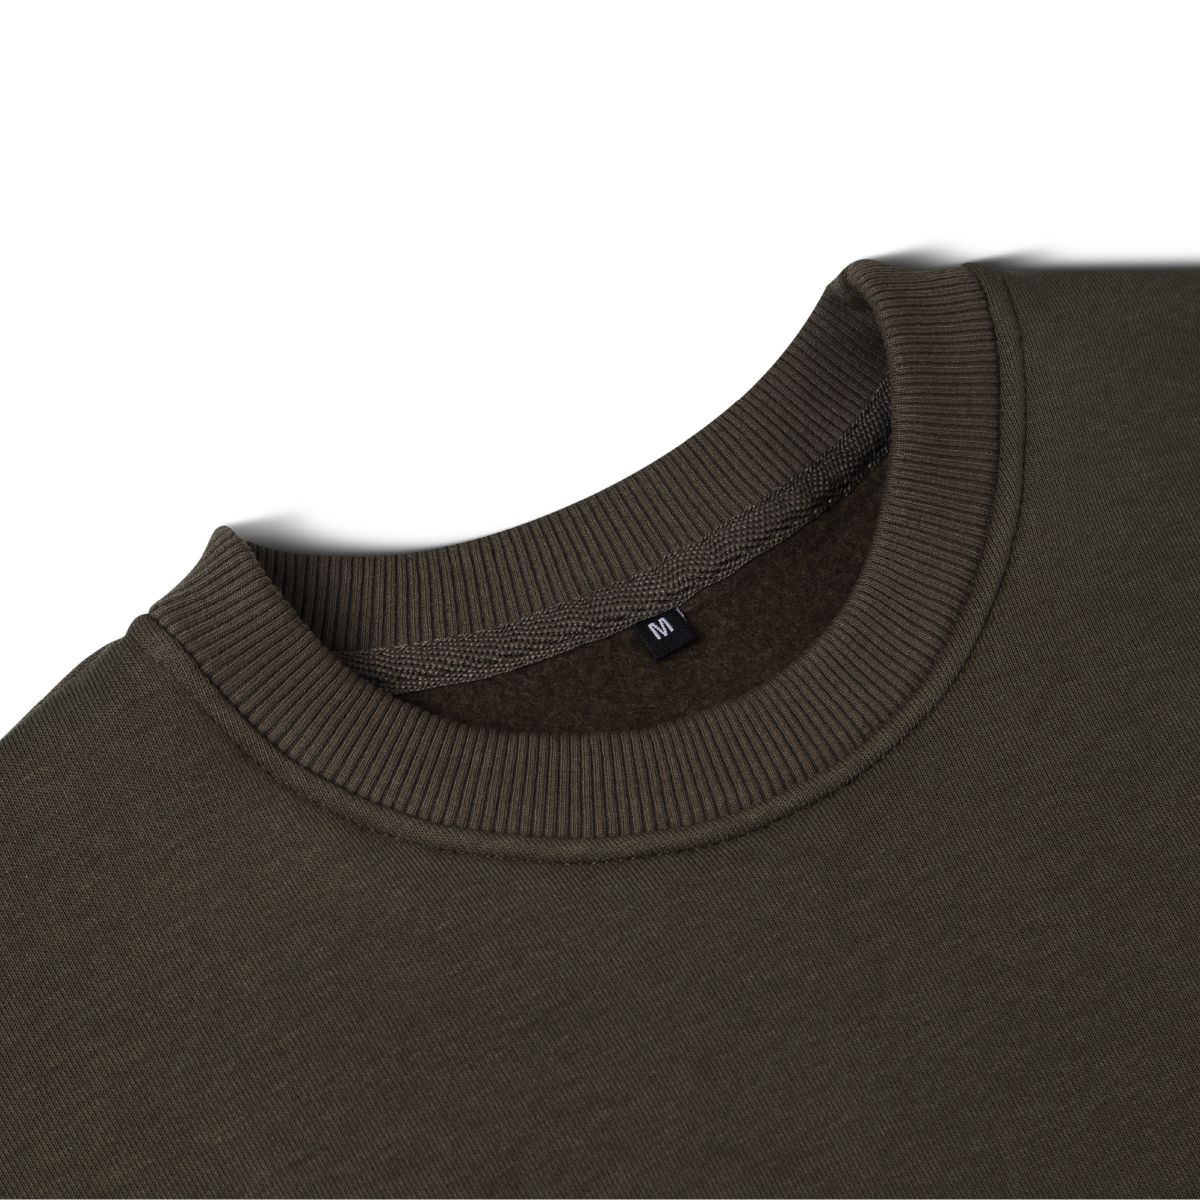 Світшот Base Soft Sweatshirt. Вільний стиль. Колір Олива/Olive. Розмір XL 7